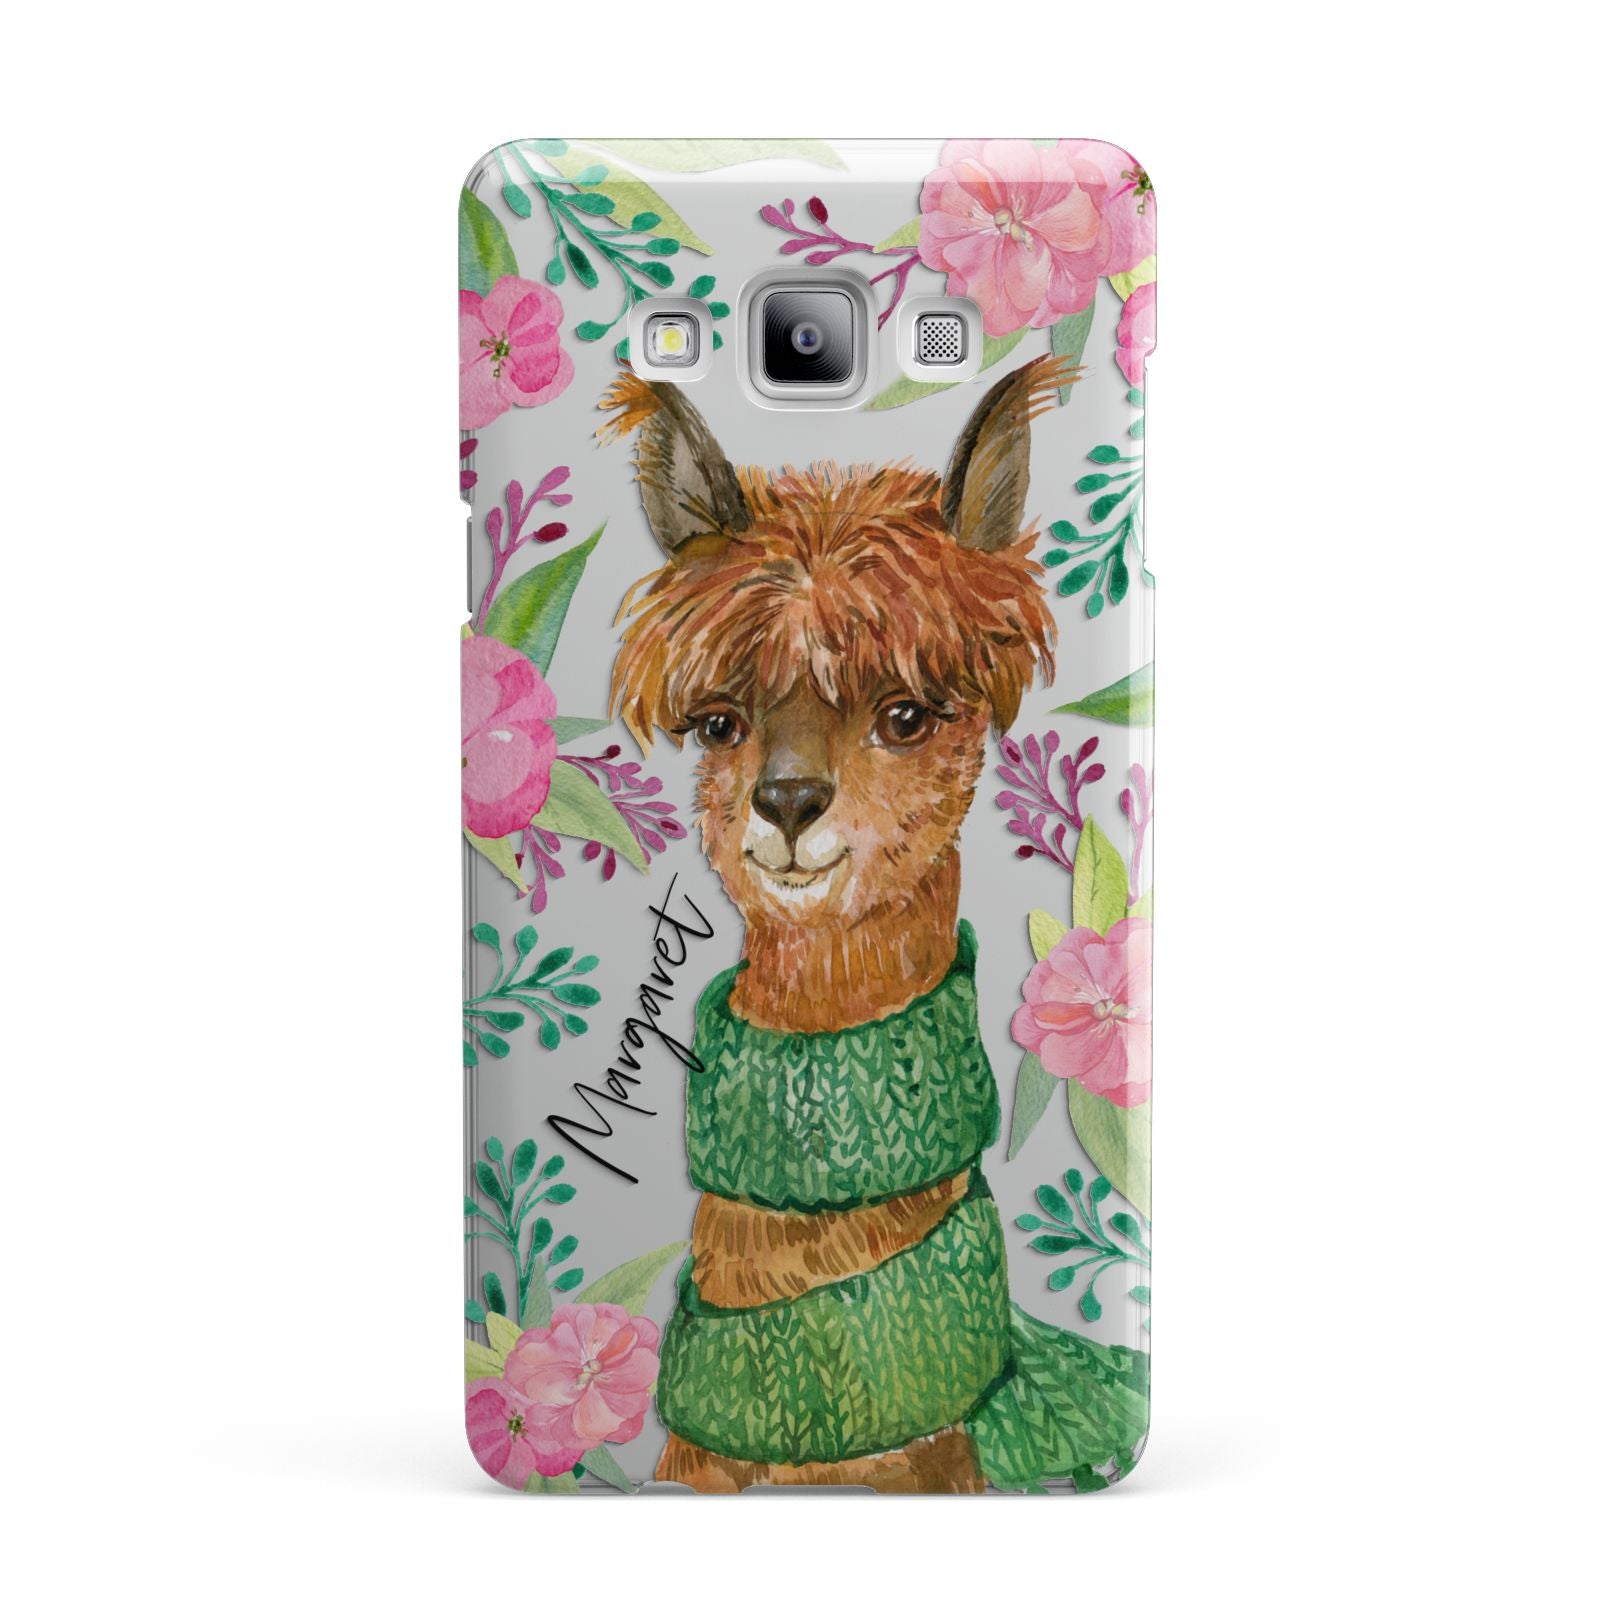 Personalised Alpaca Samsung Galaxy A7 2015 Case